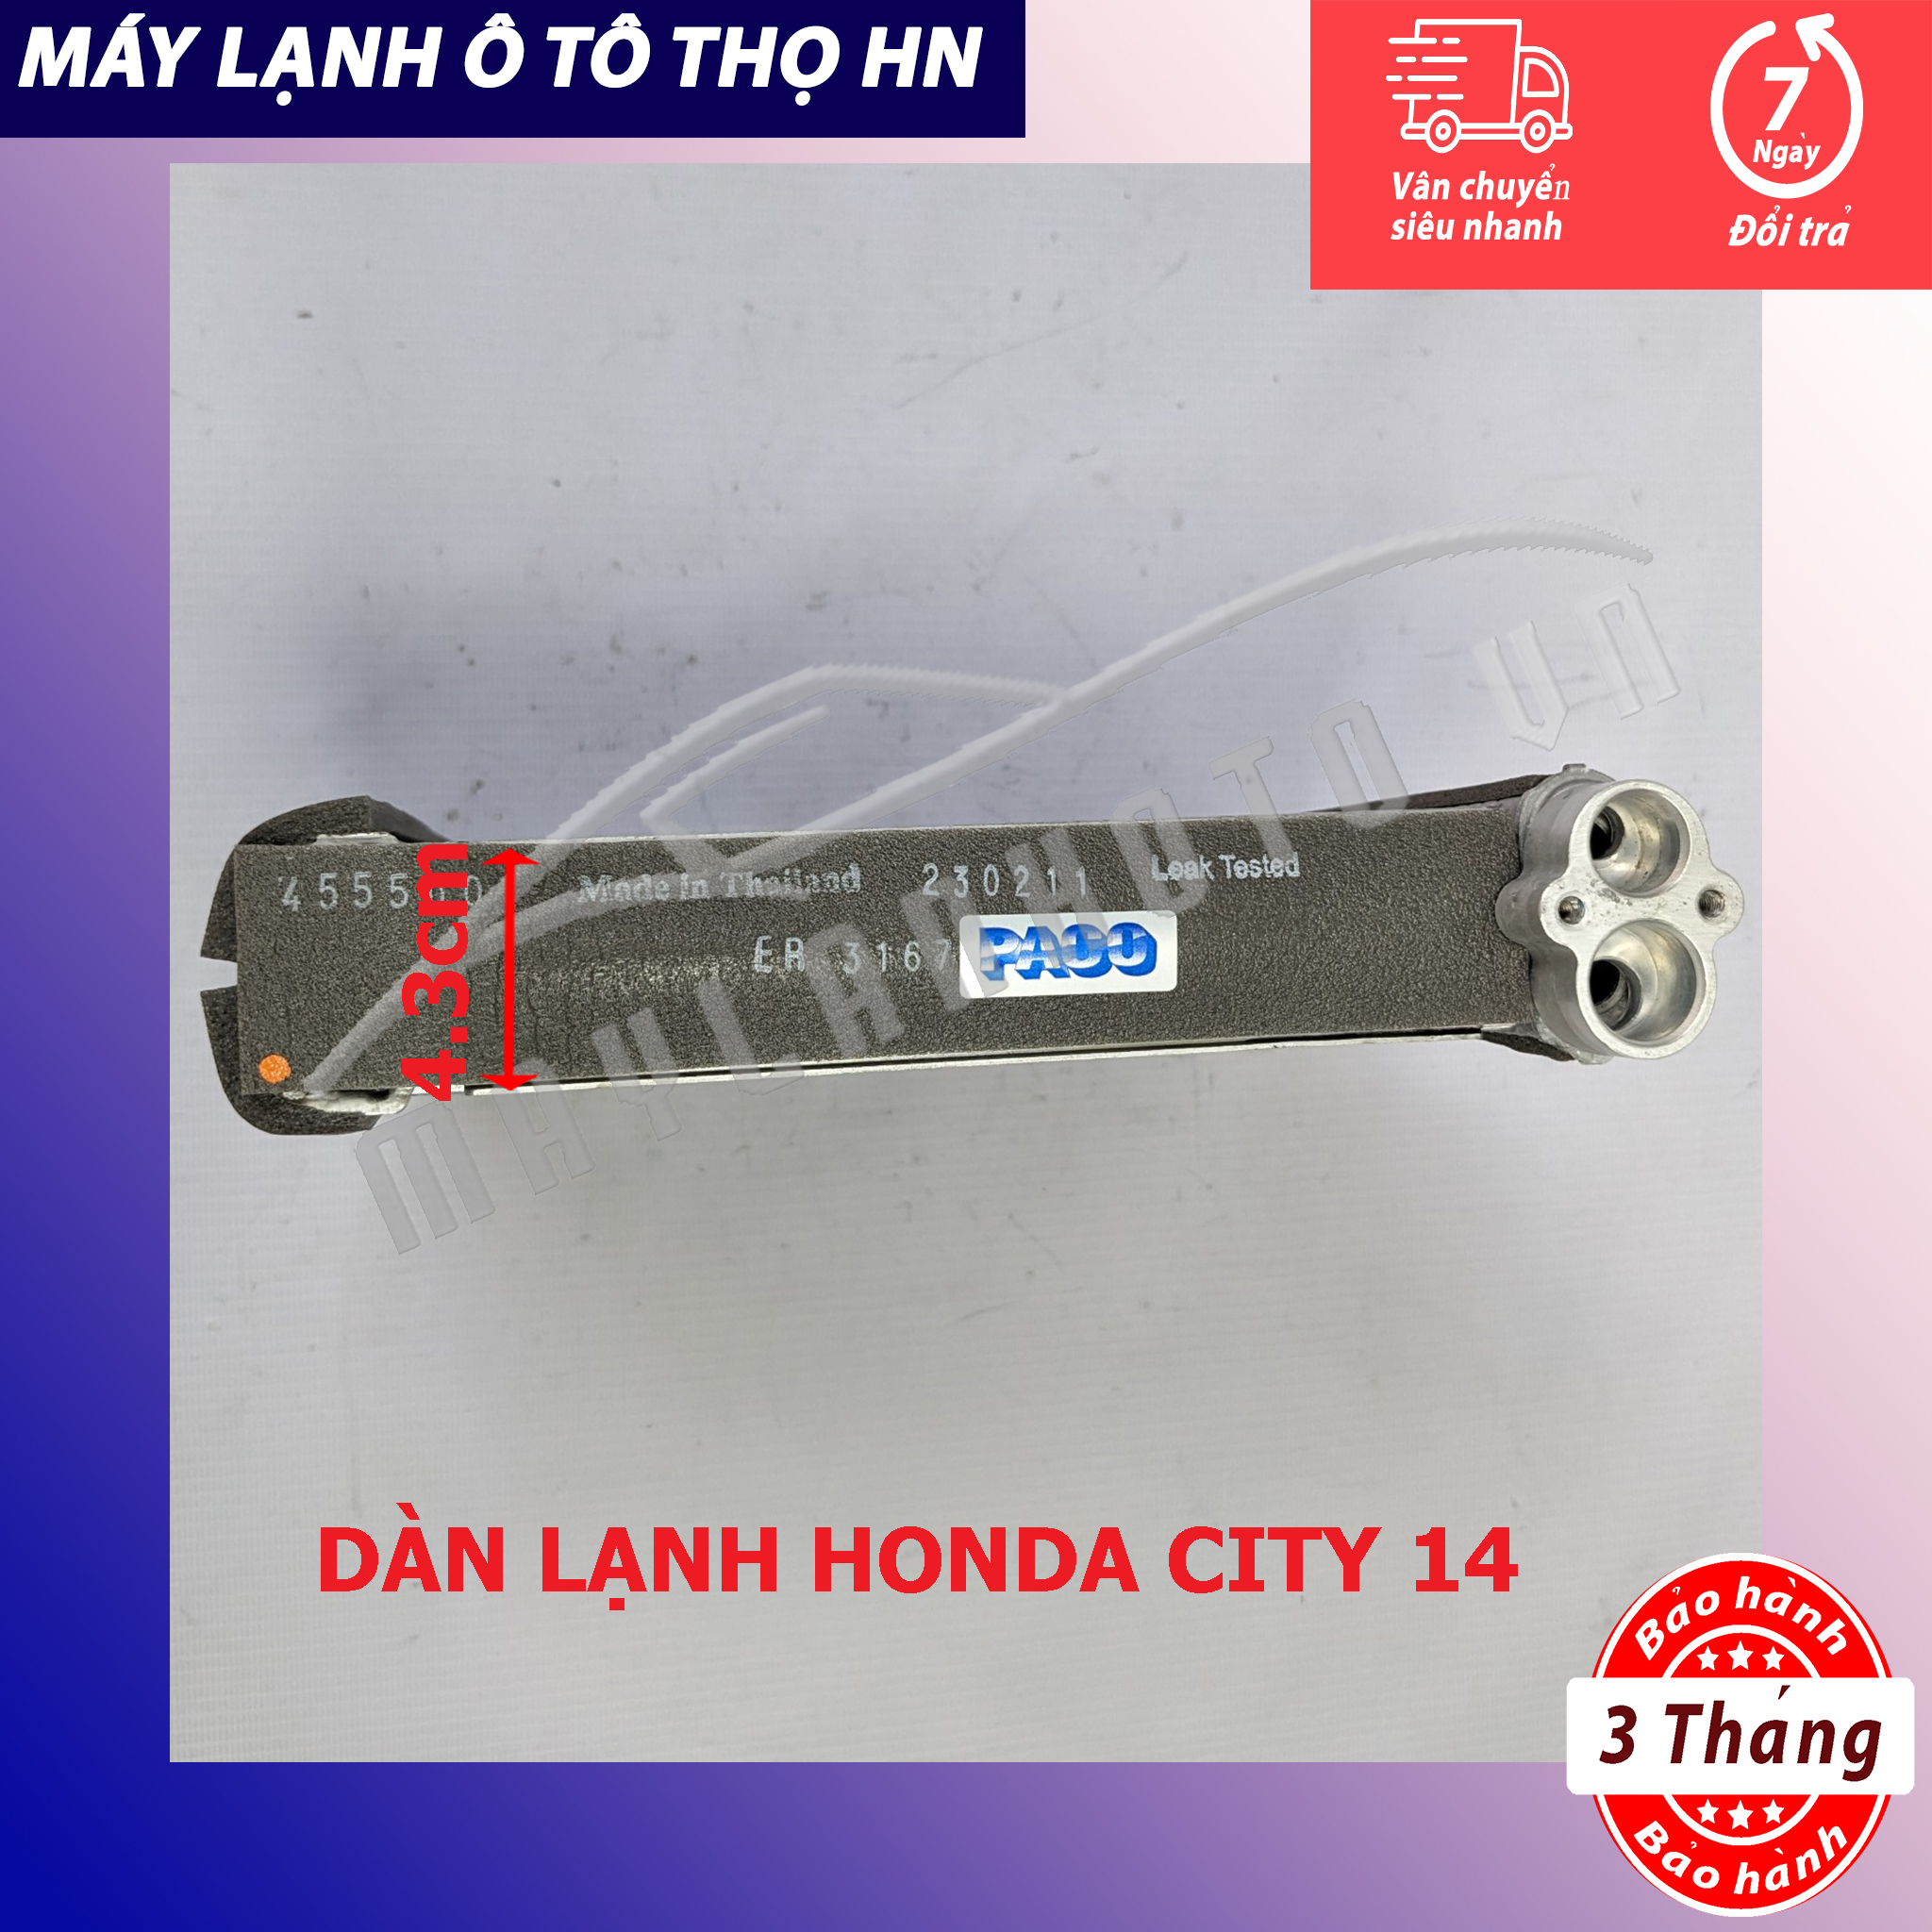 Dàn (giàn) lạnh Honda City 2009 2010 2011 2012 2013 2014 (không còng) Hàng xịn Thái Lan 09 10 11 12 13 14